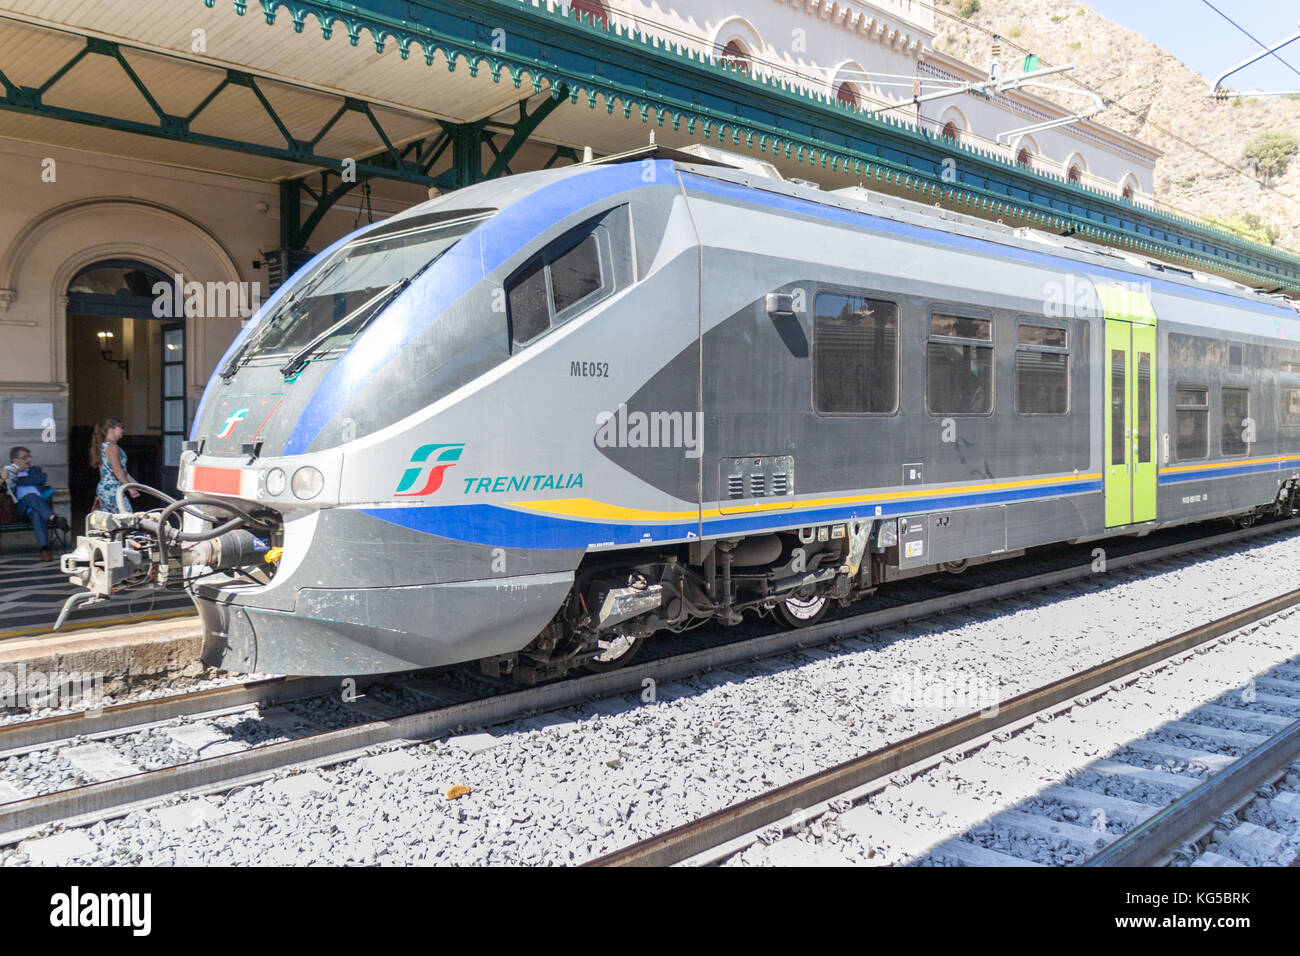 Trenitalia train pulling into Taormina station, Sicily, Italy Stock Photo